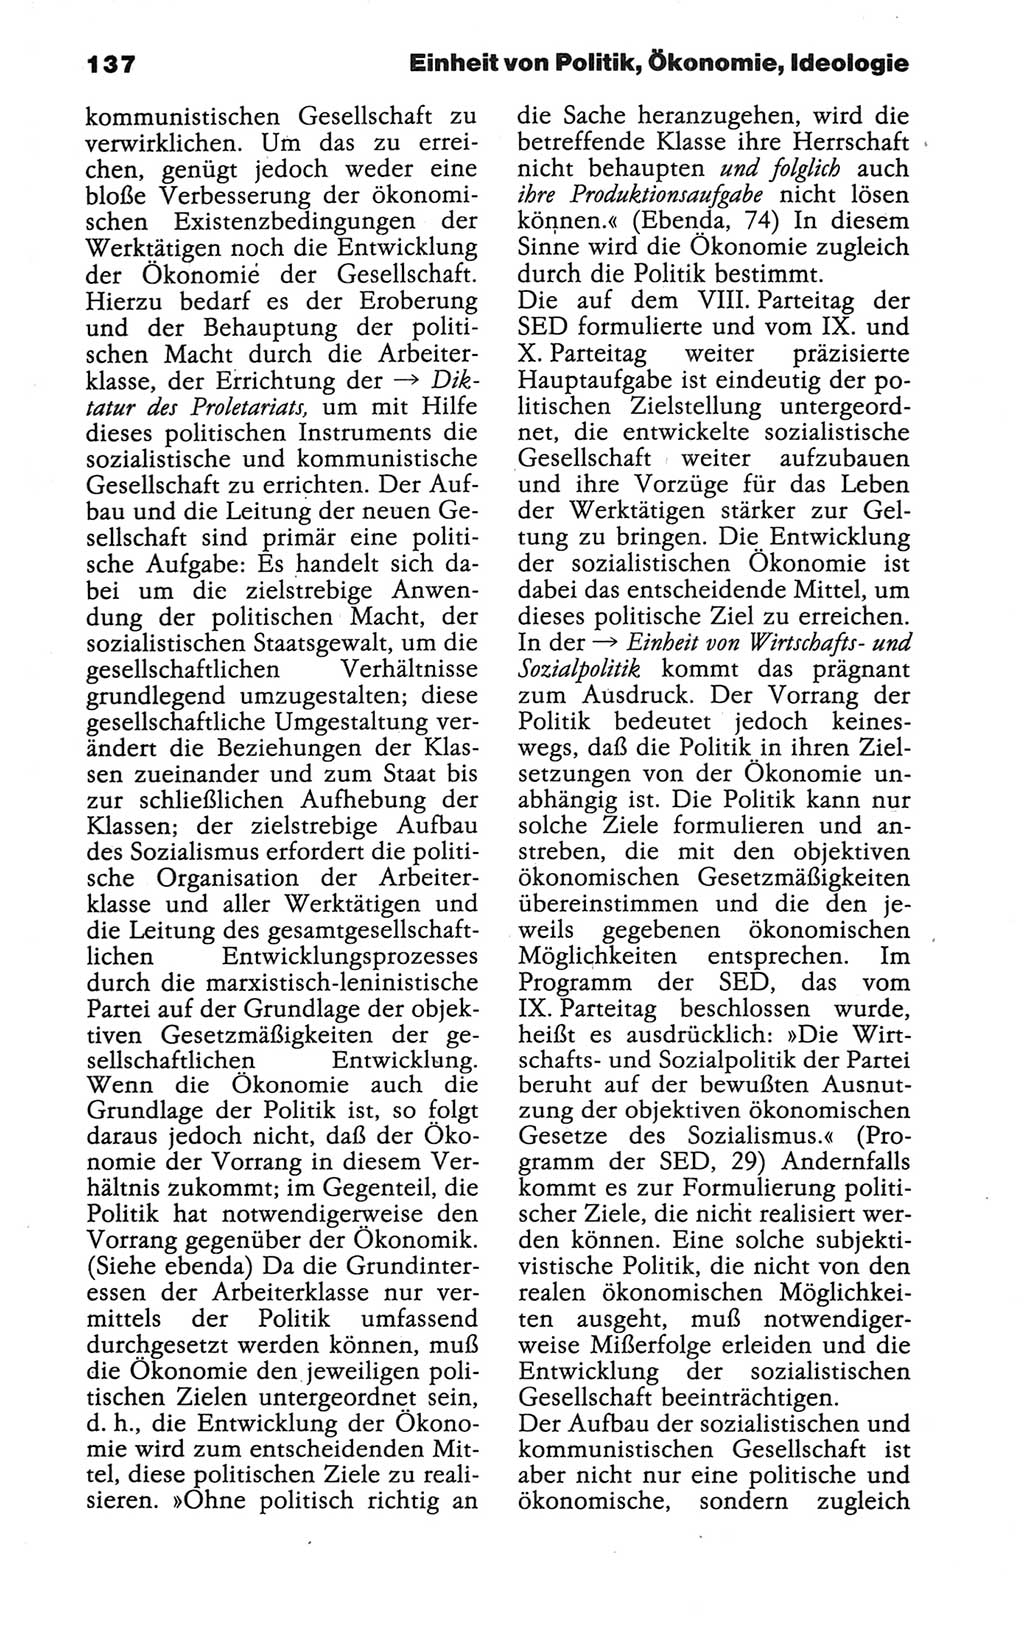 Wörterbuch der marxistisch-leninistischen Philosophie [Deutsche Demokratische Republik (DDR)] 1986, Seite 137 (Wb. ML Phil. DDR 1986, S. 137)